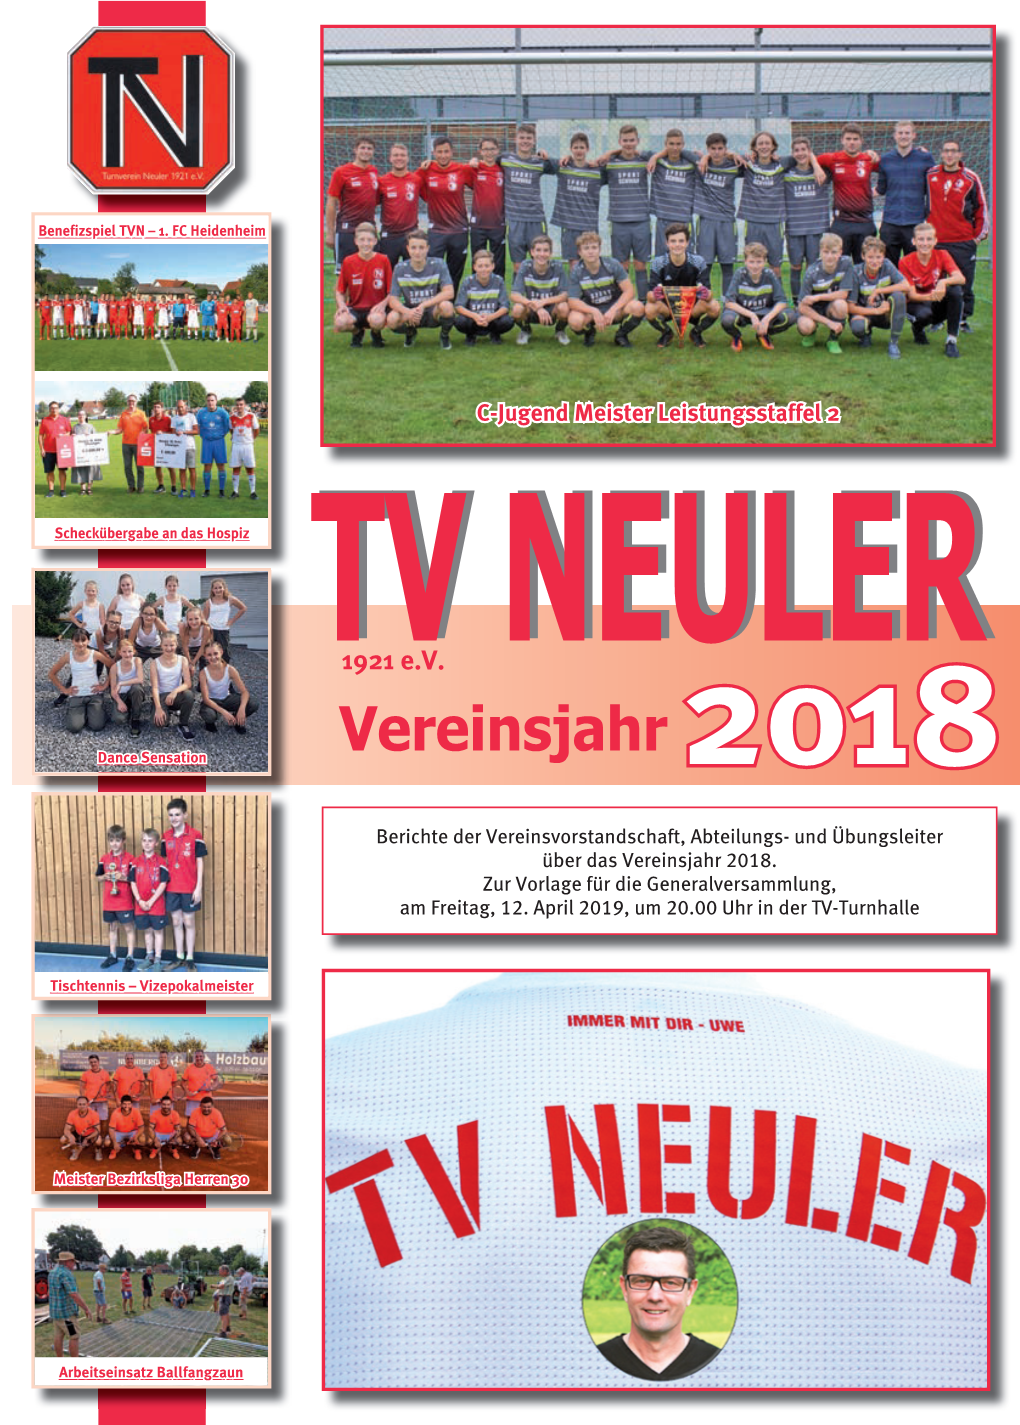 TV NEULER Vereinsjahr 2018